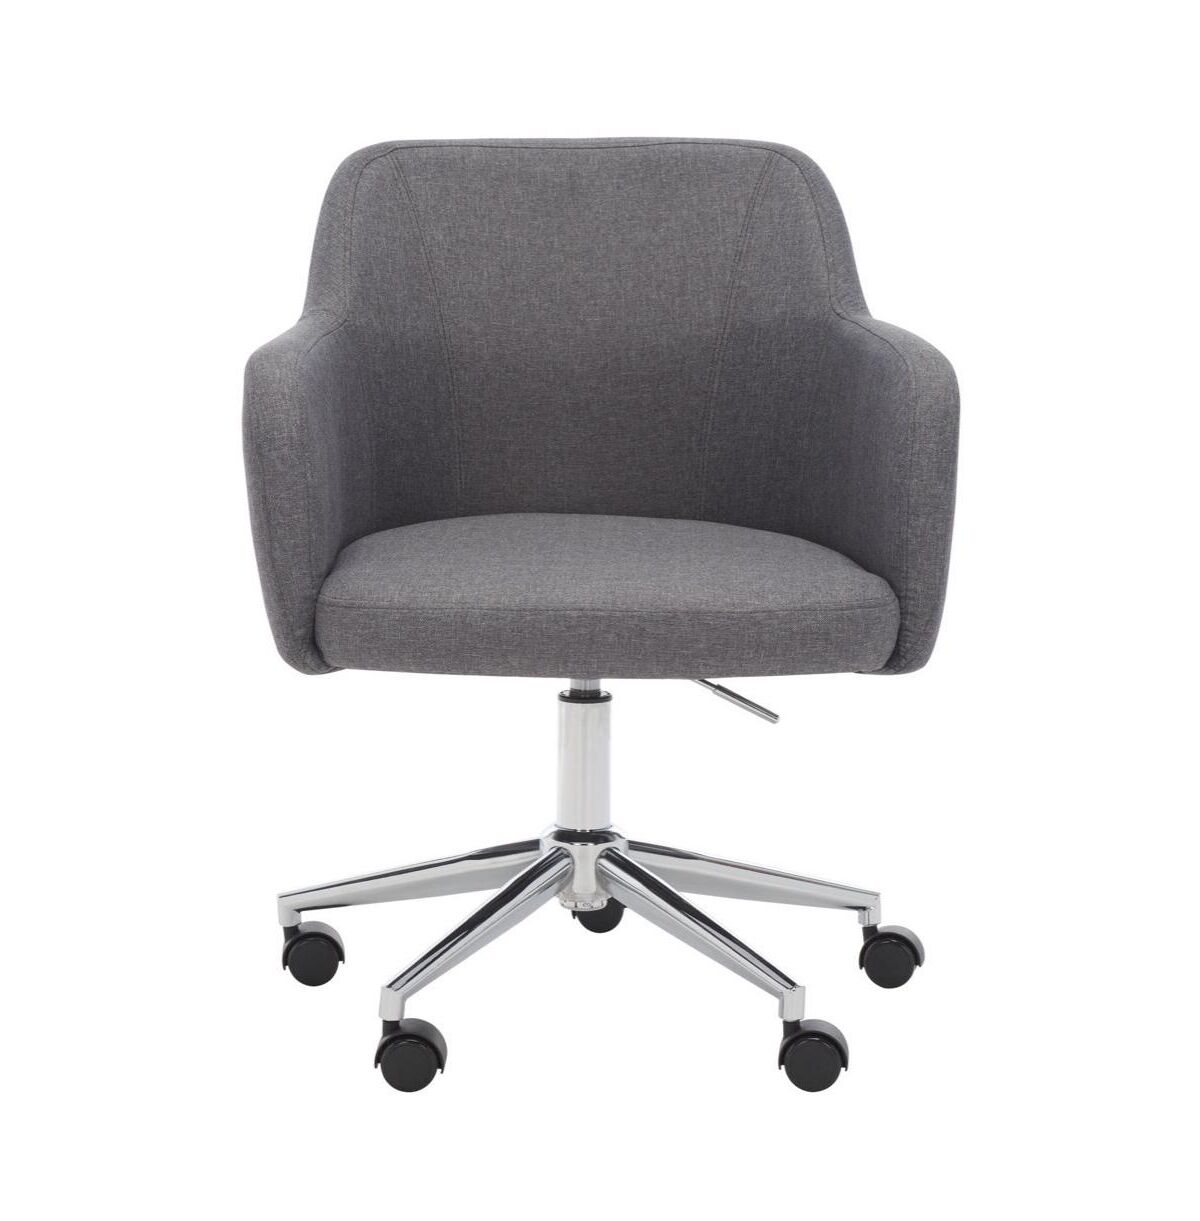 Safavieh Kains Swivel Office Chair - Grey/chrome